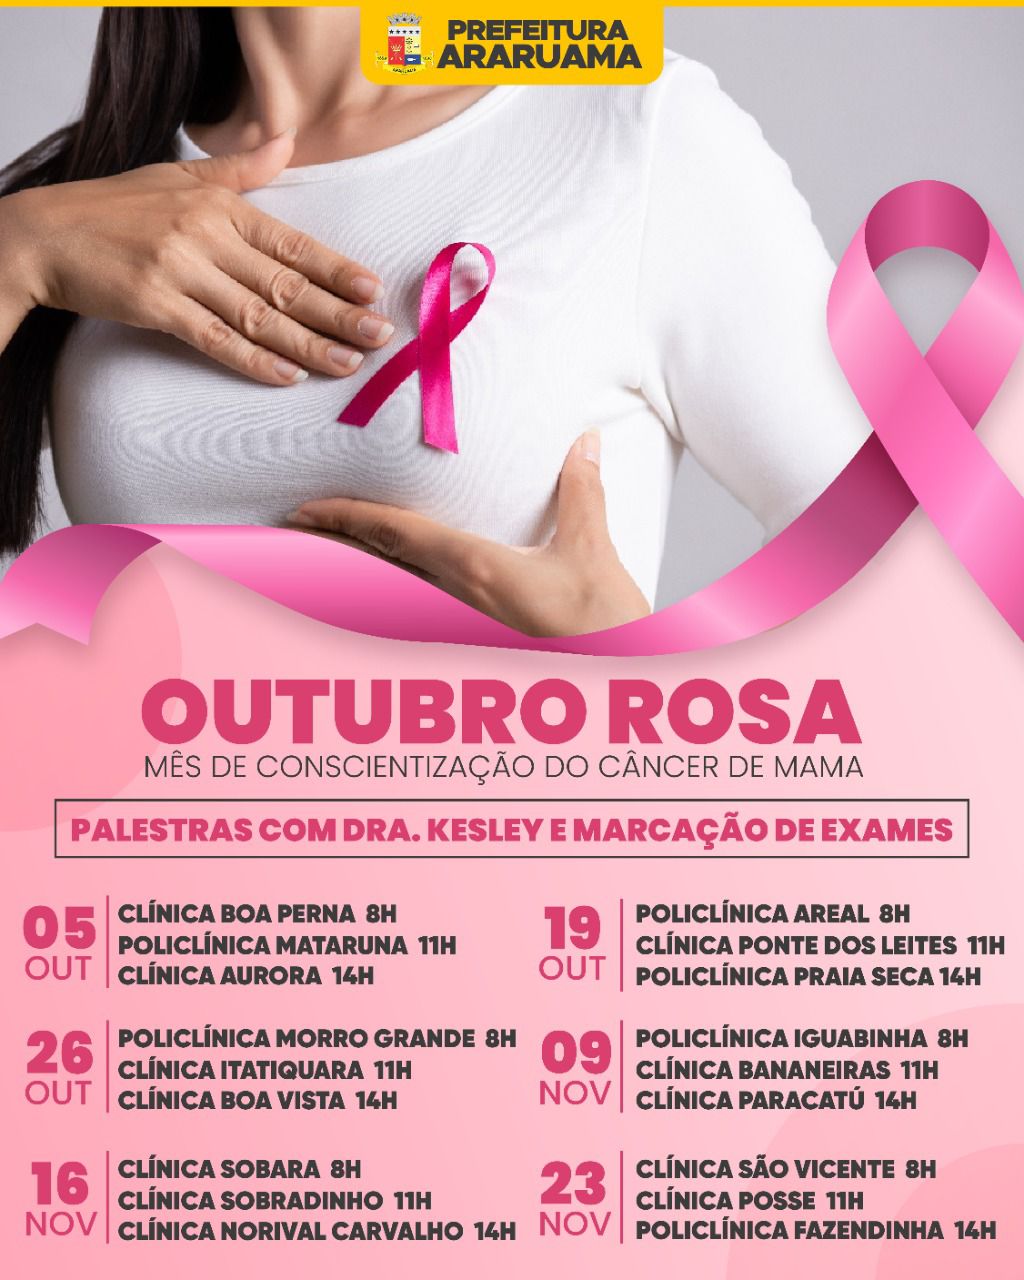 Palestras e realização de exames de mamografia vão marcar o “Outubro Rosa” em Araruama